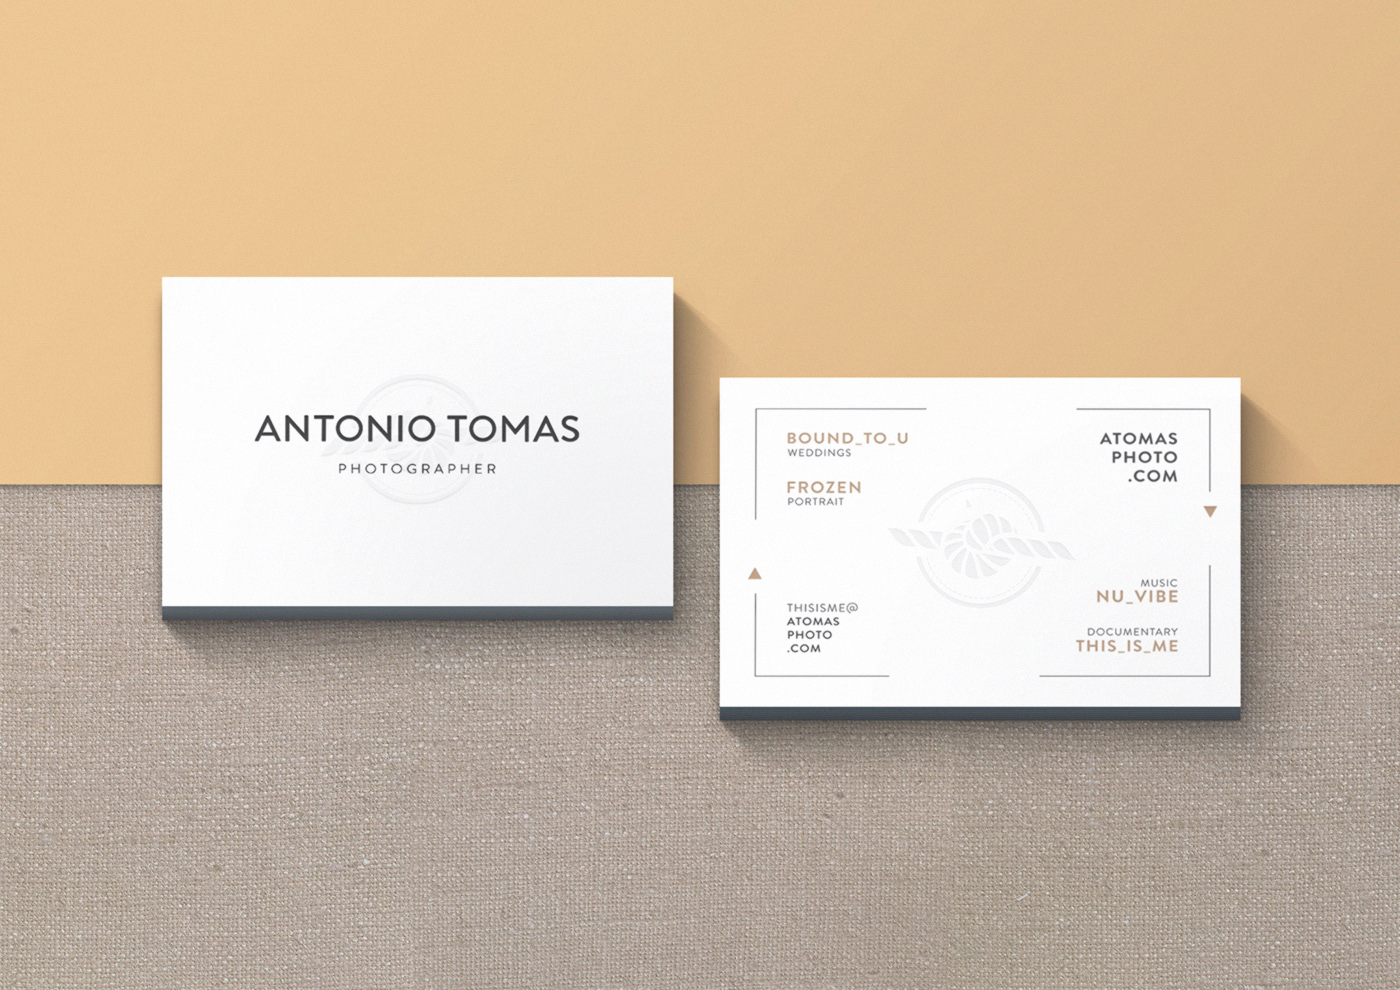 Antonio Tomas tarjeta 2